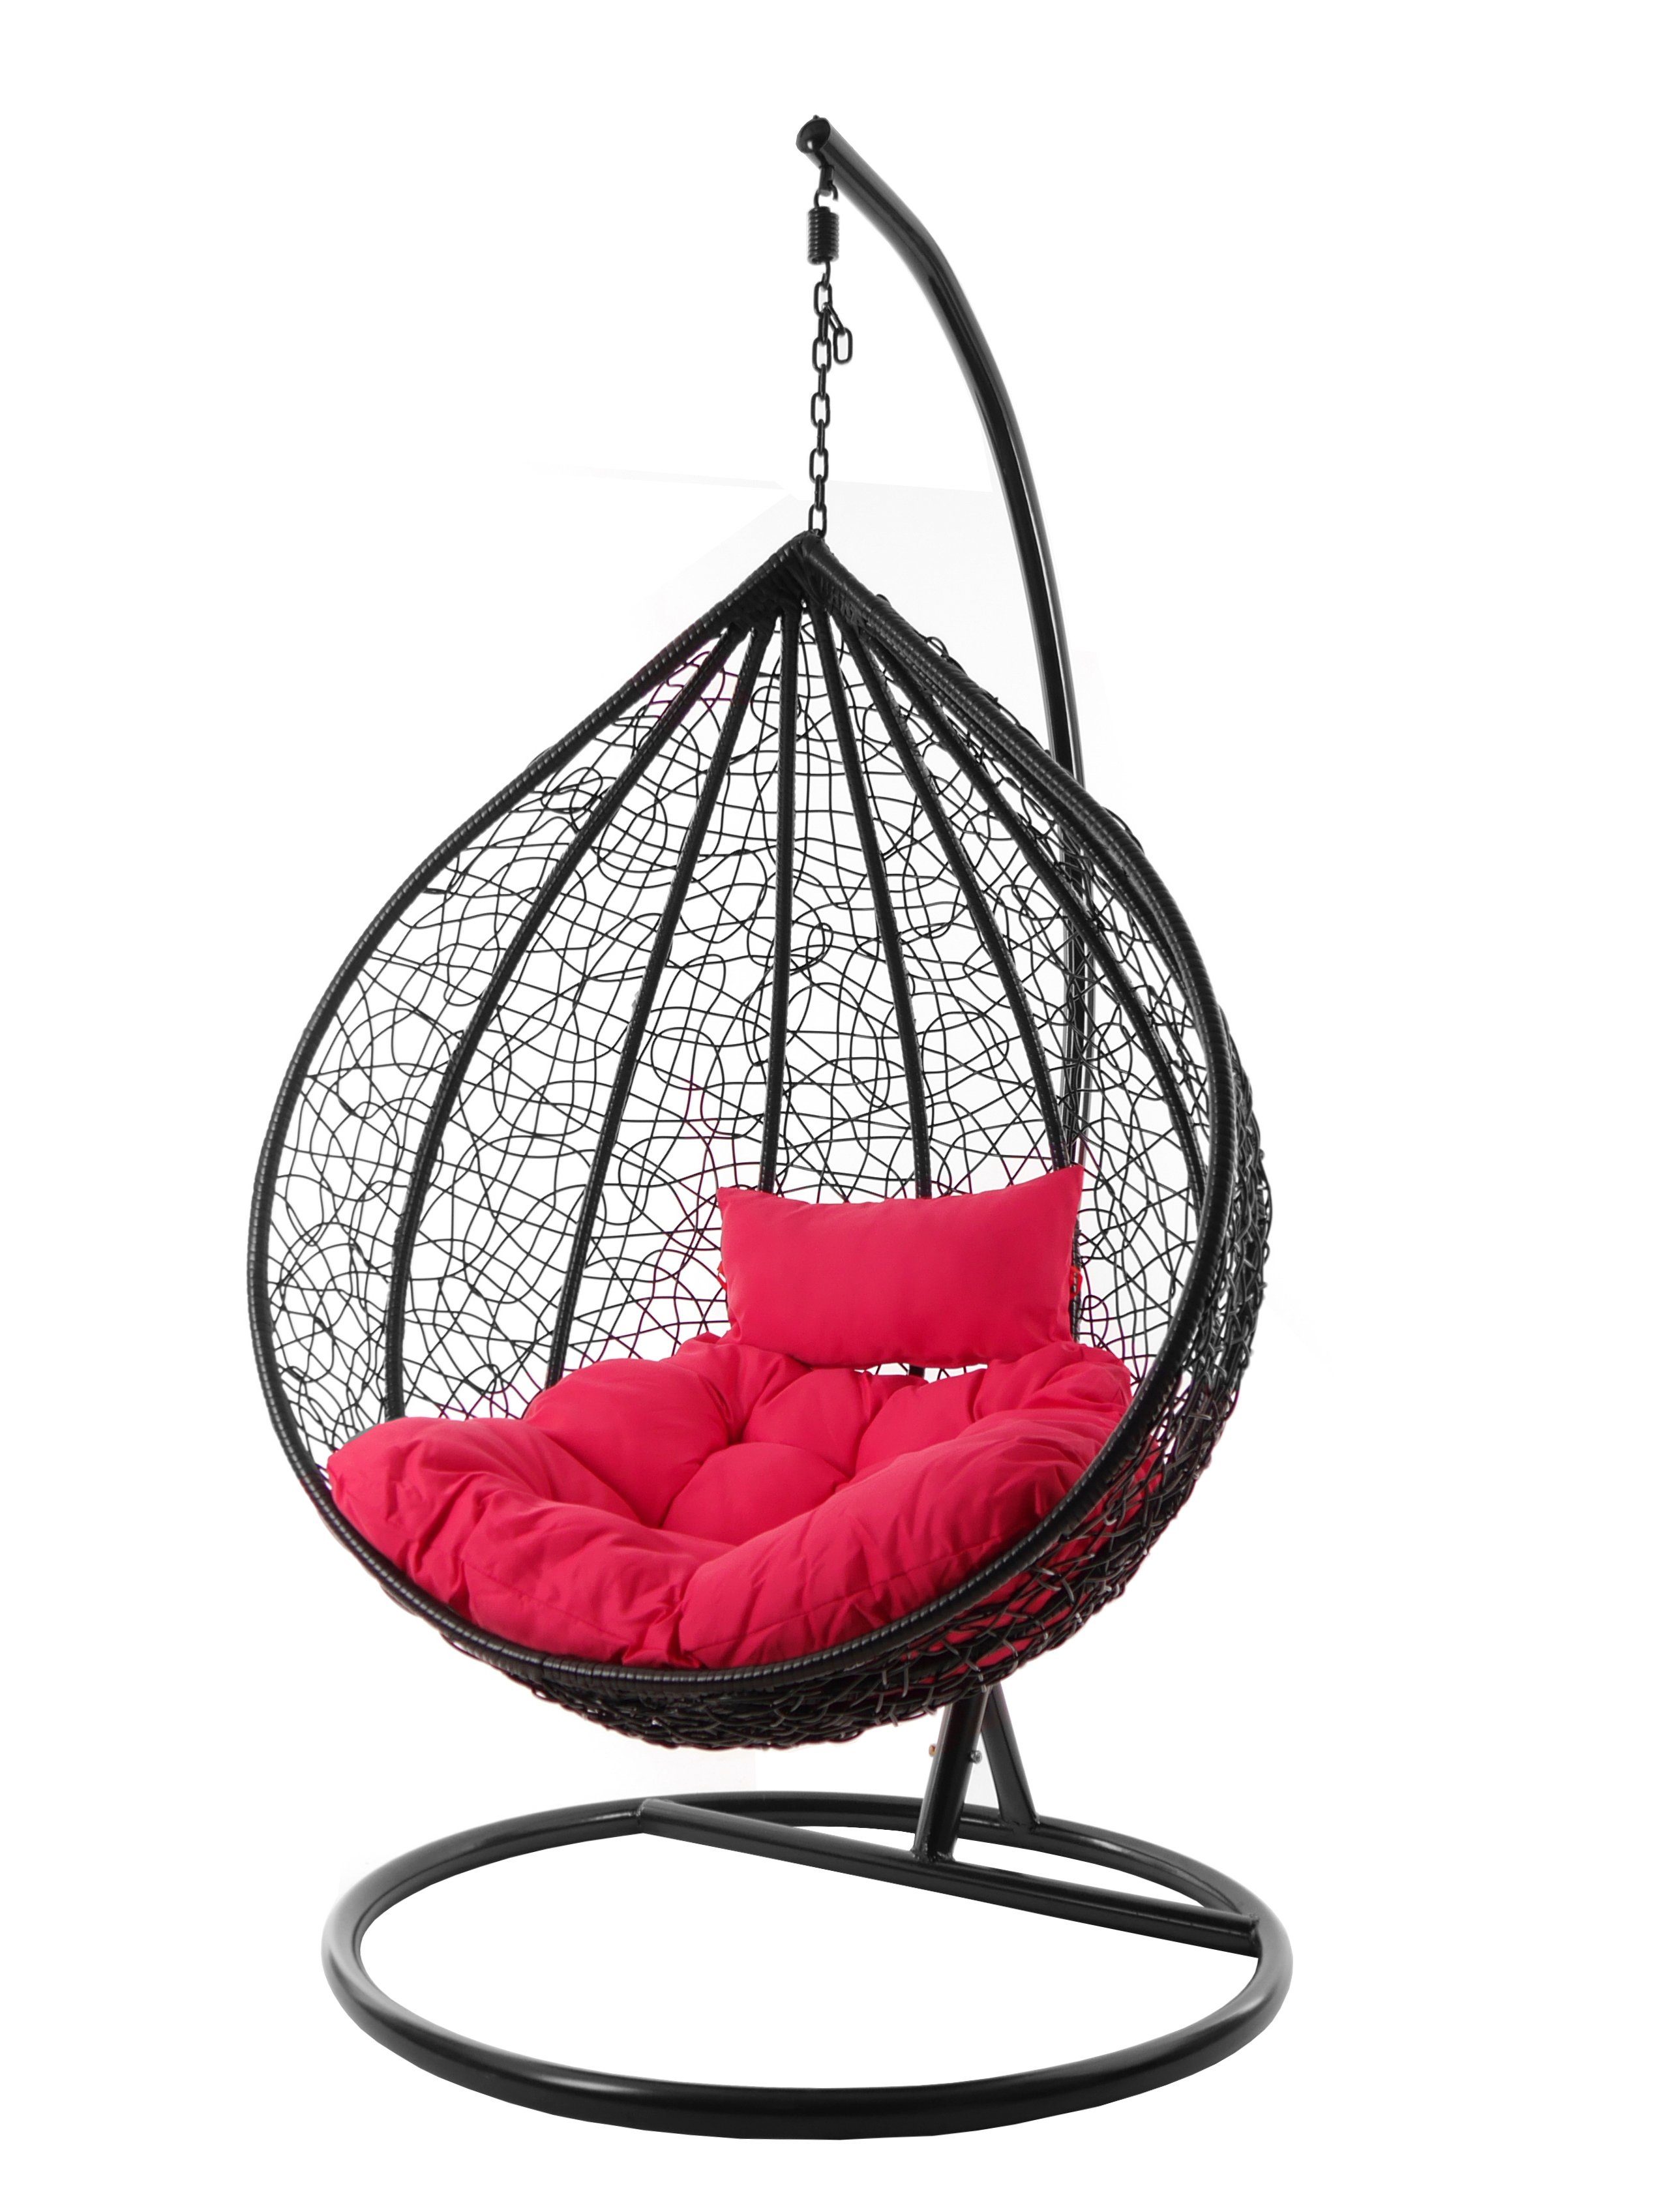 Hängesessel inklusive KIDEO pink schwarz, Swing Hängesessel und pink) moderner edles Kissen MANACOR Schwebesessel schwarz, Gestell (3333 Chair, hot